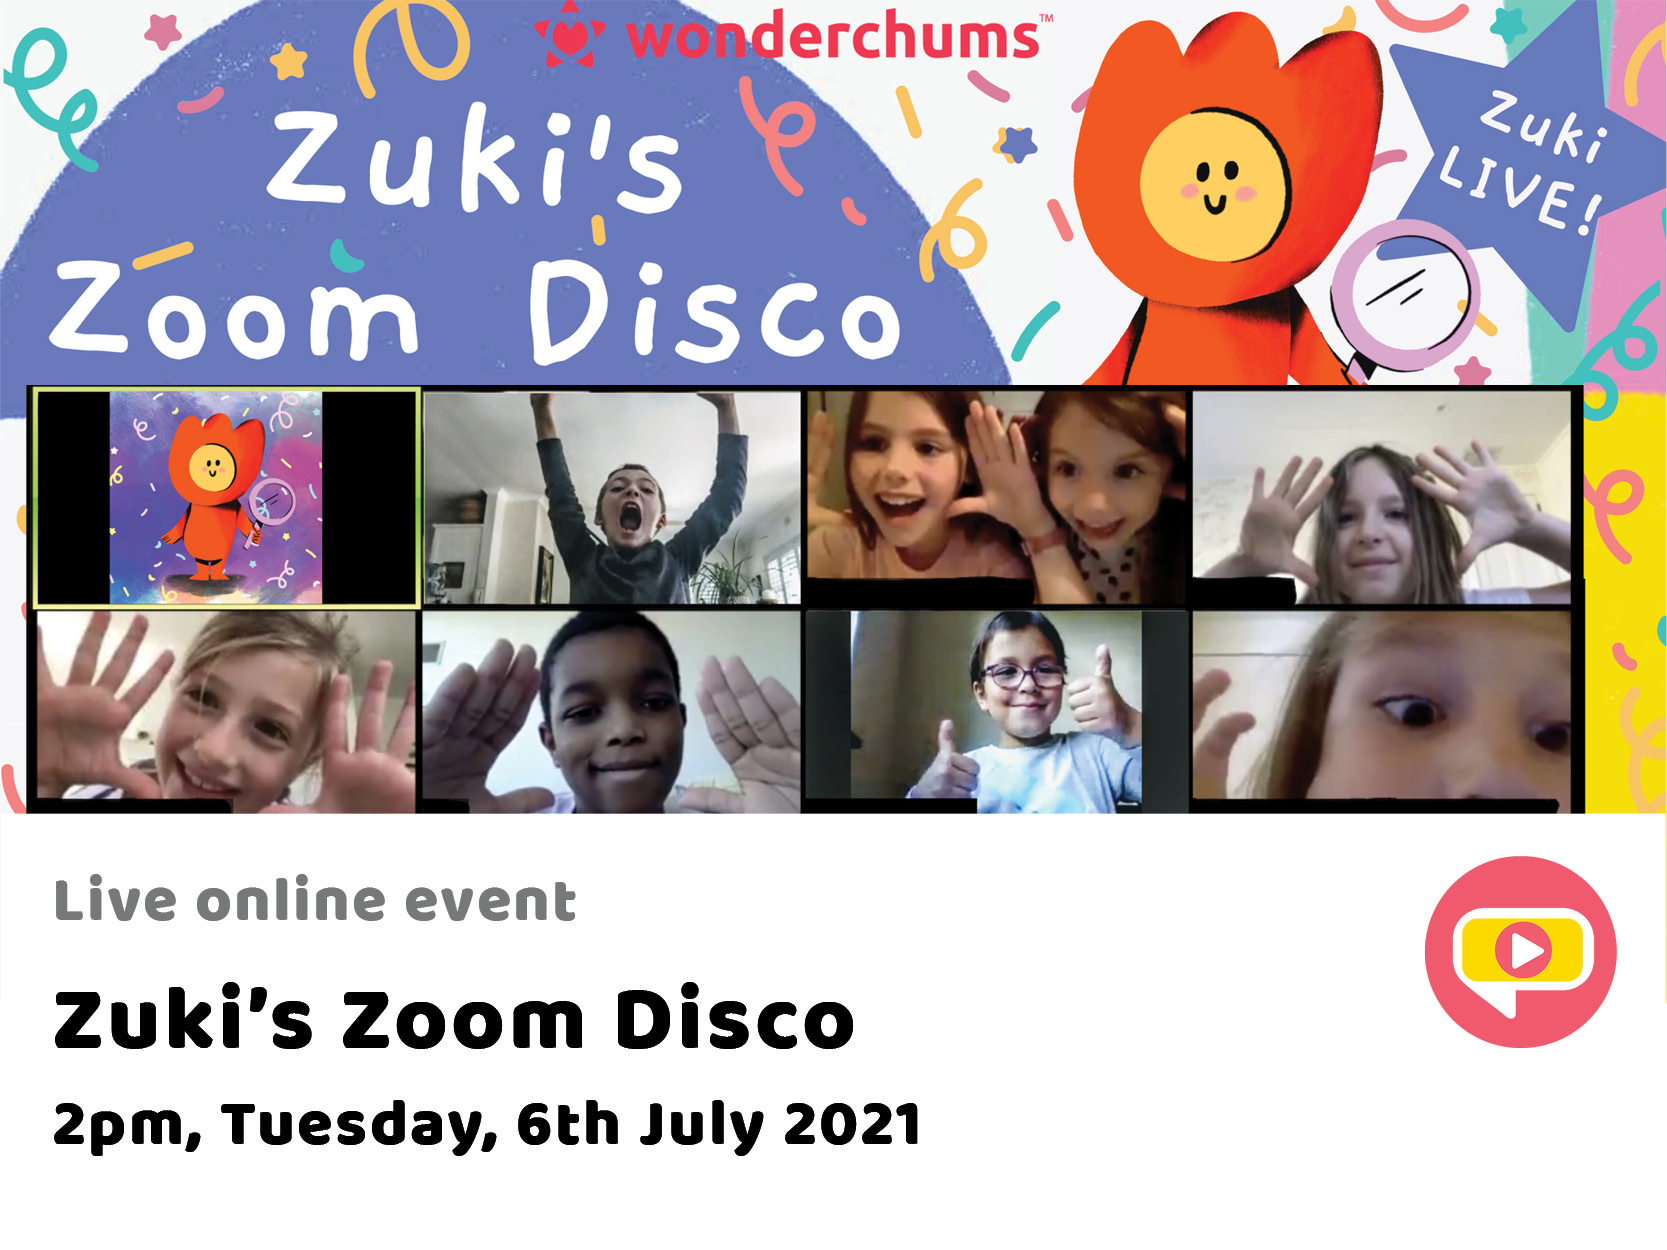 Zuki’s Zoom Disco - 2pm, Tuesday, 6th July 2021